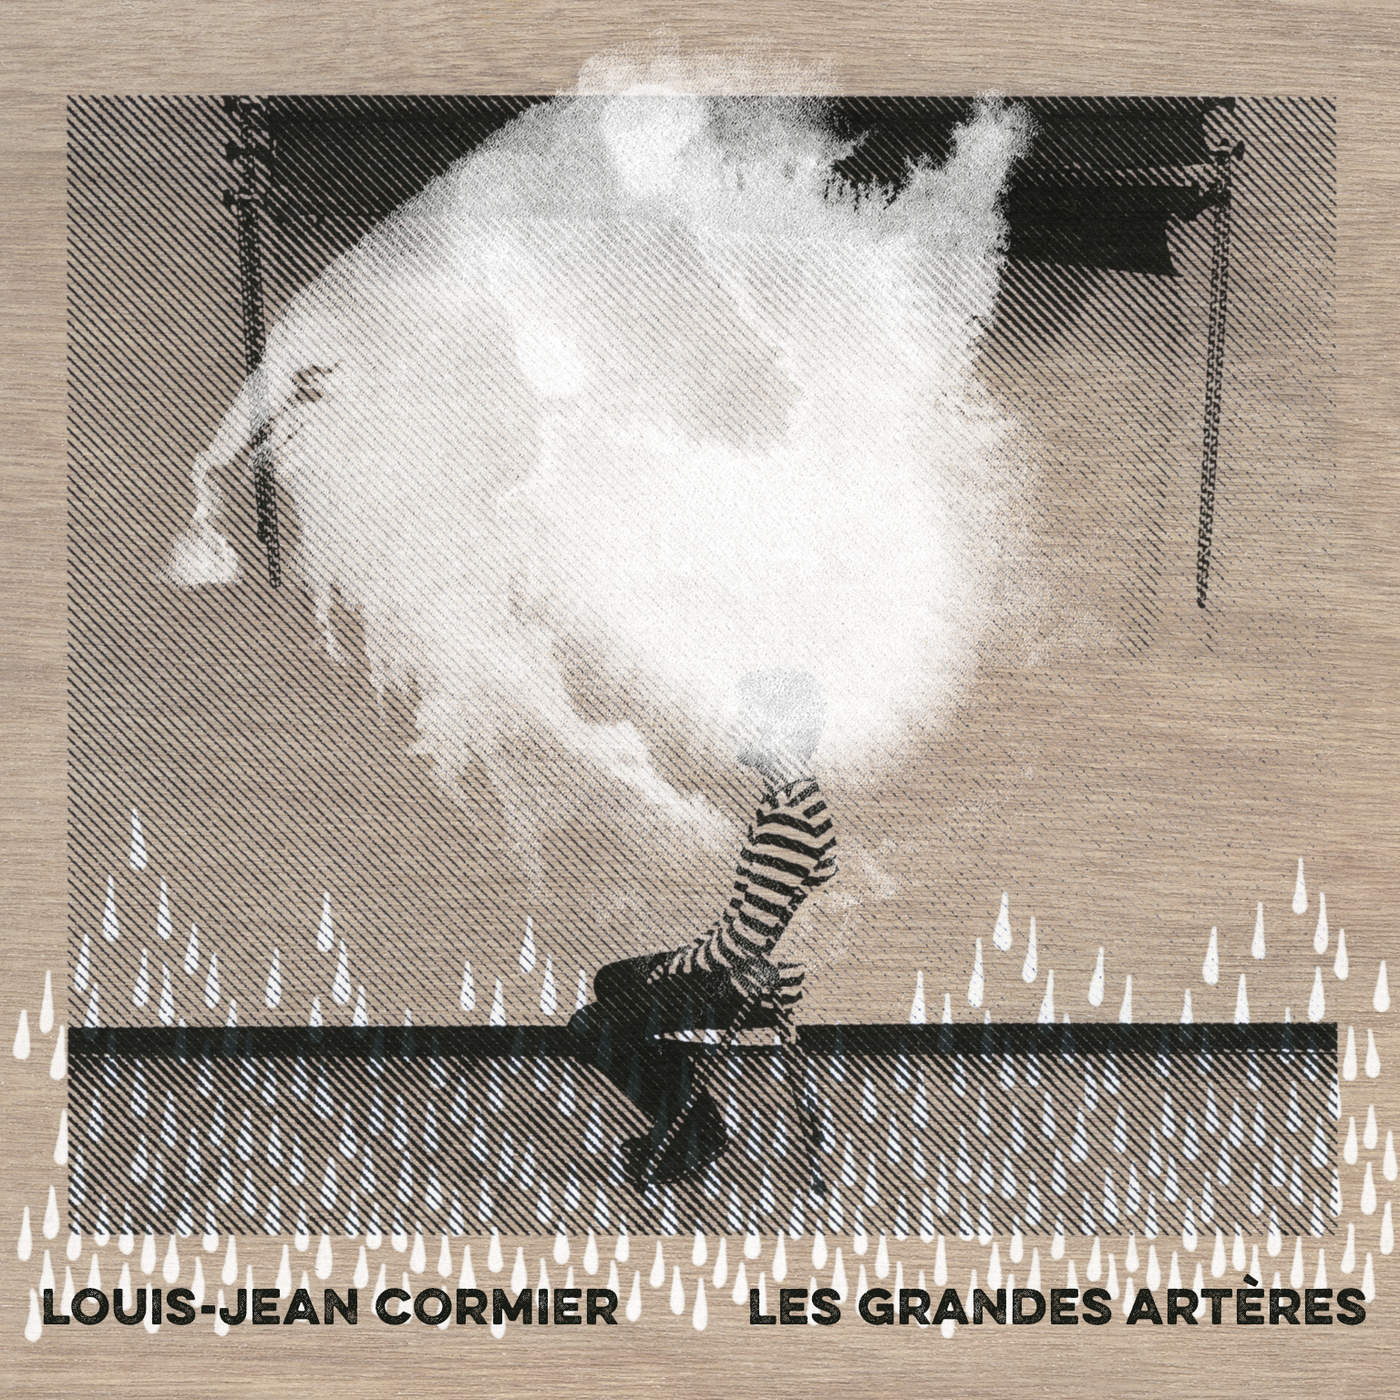 Louis jean Cormier album Les grandes artères interview Karkwa United States Of Paris